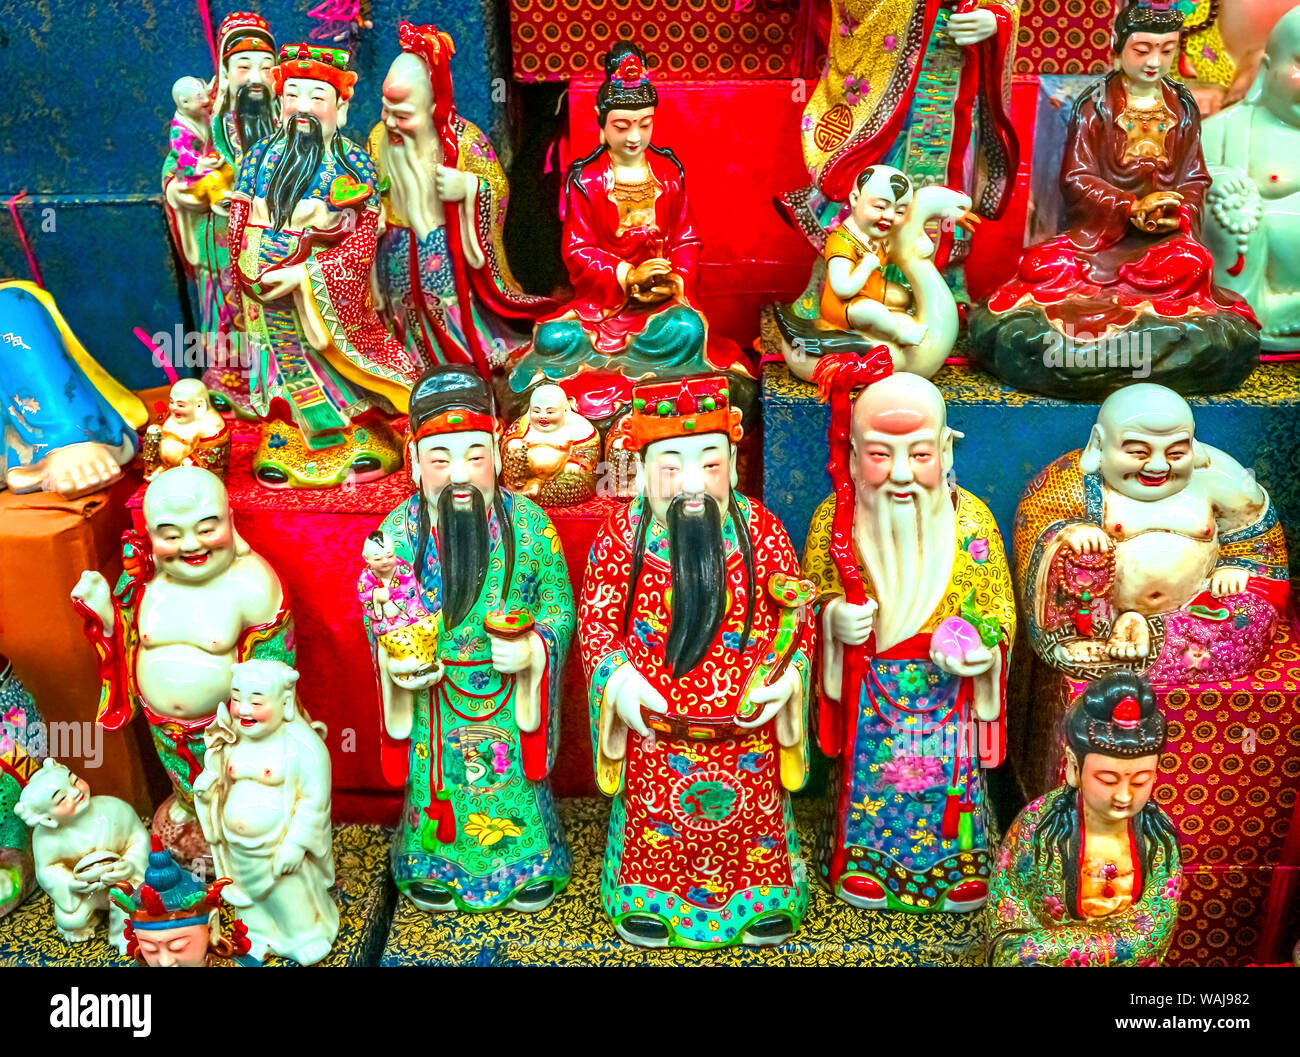 Réplique de la céramique chinoise dieux taoïstes, Panjuan Brocante décorations, Beijing, Chine. Panjuan marché aux puces Curio a de nombreuses imitations, répliques et copies de produits chinois. Banque D'Images